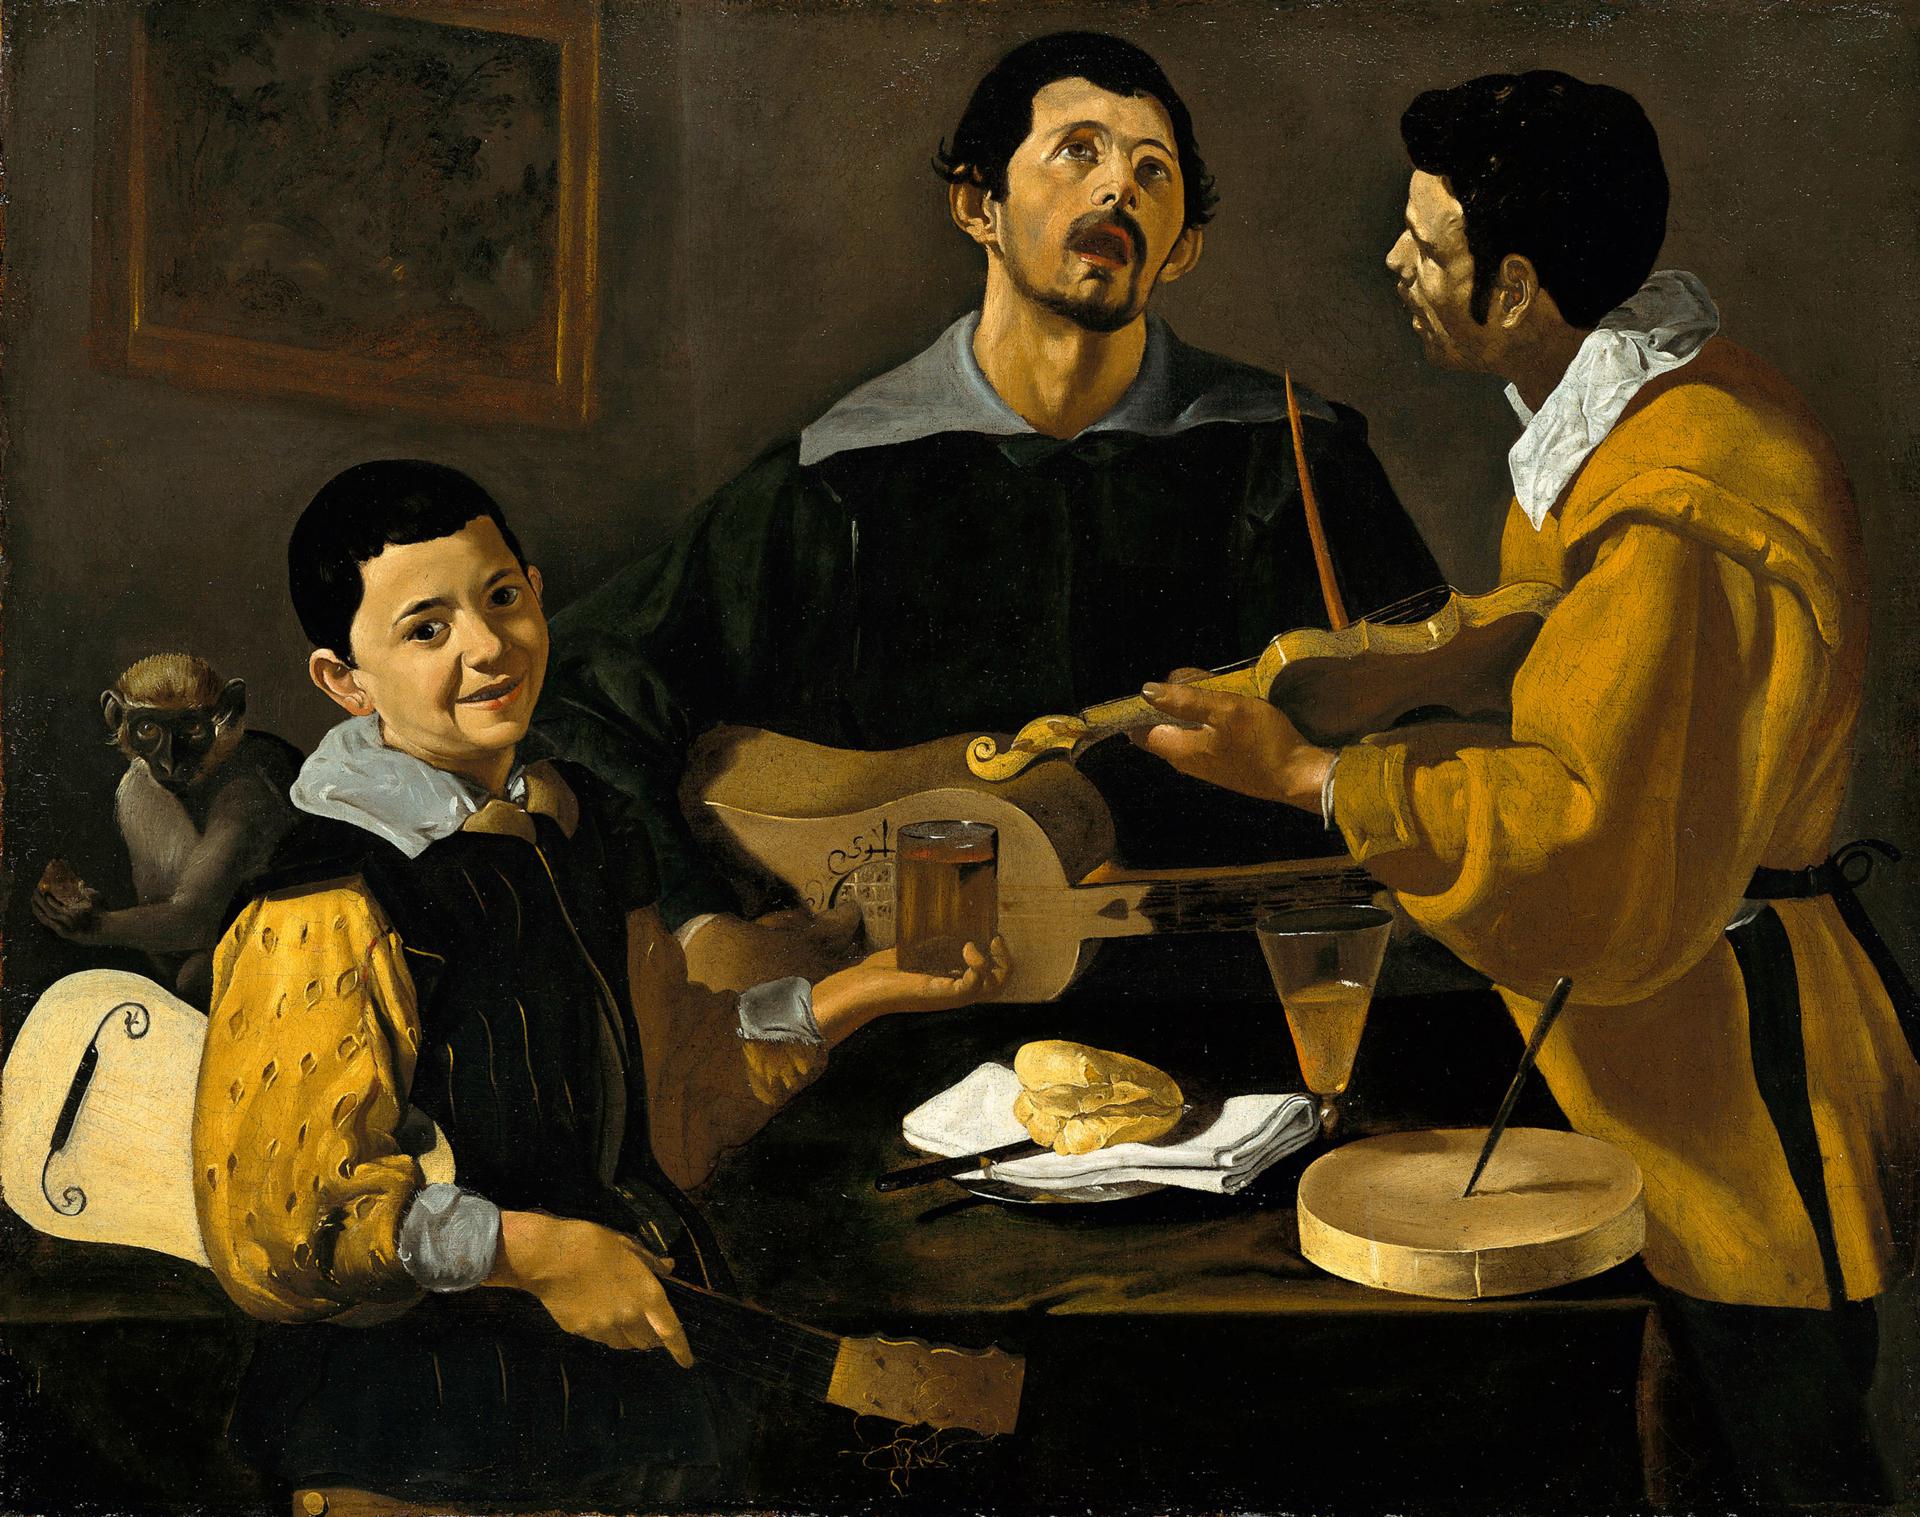 0013_委拉斯开兹_委拉斯开兹绘画作品集-Diego-Velazquez——-The-Three-Musicians_5063x4000PX_TIF_72DPI_59_0